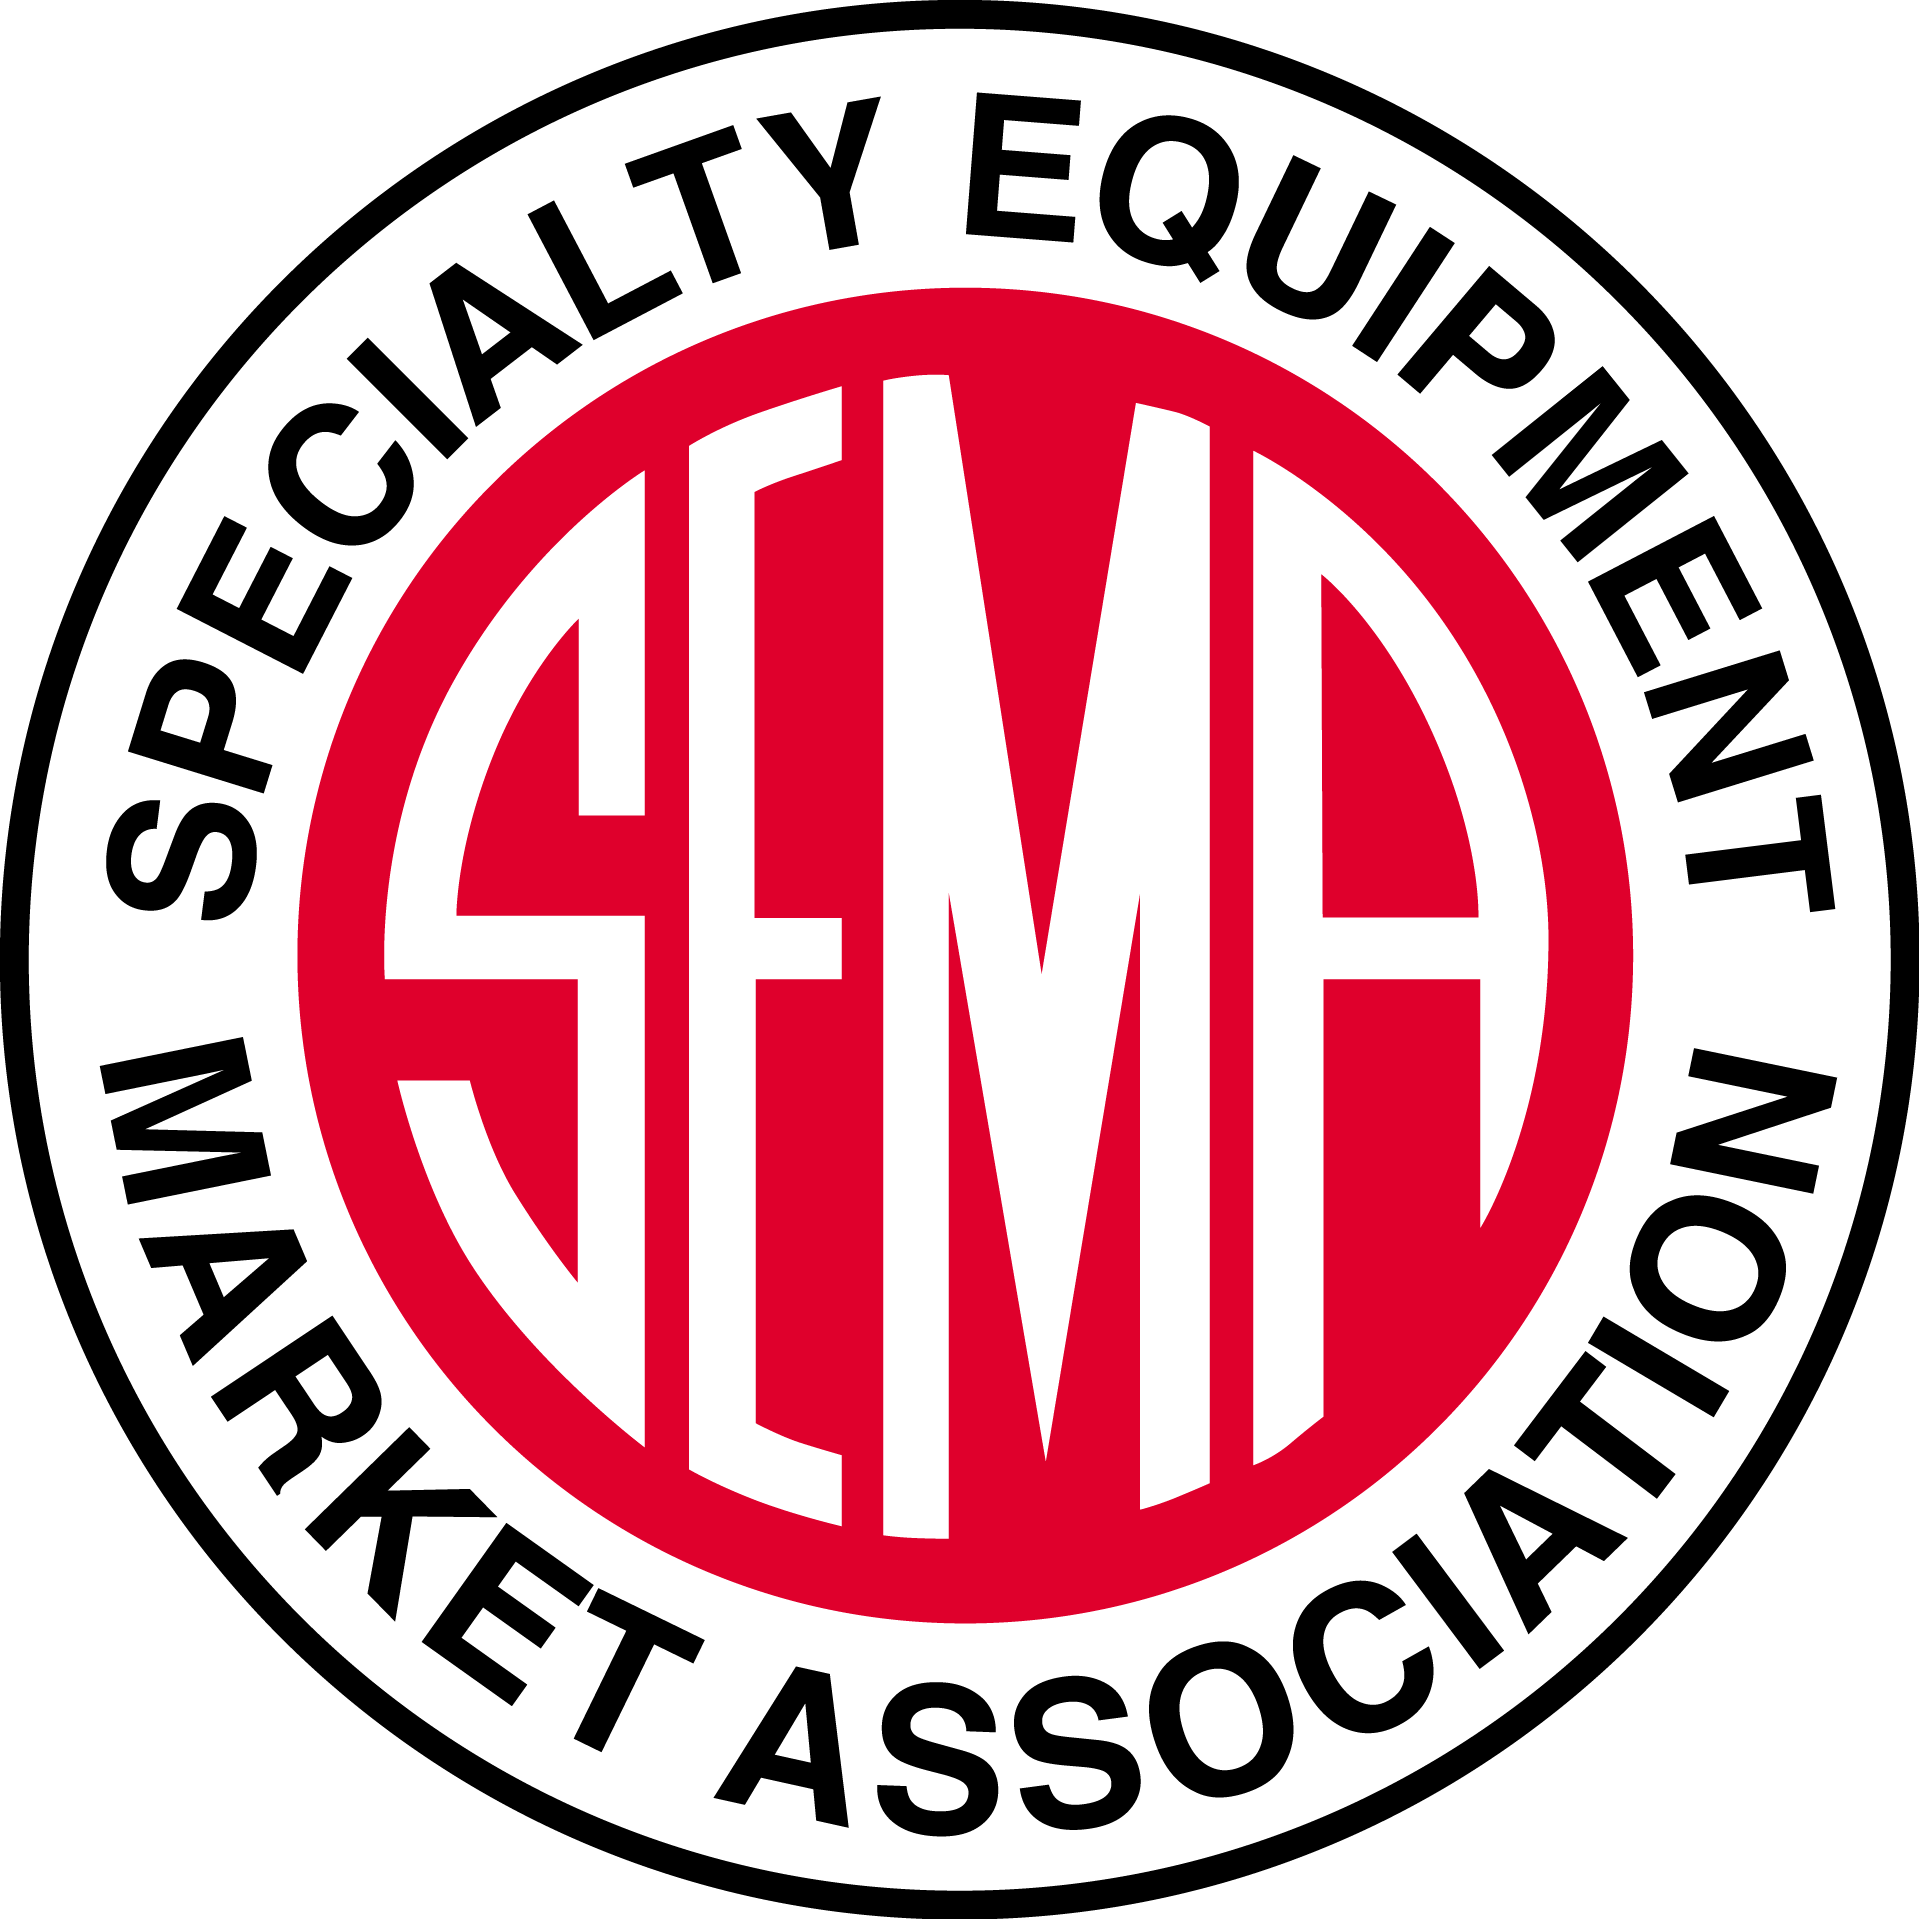 Specialty Equipment Market Association logo